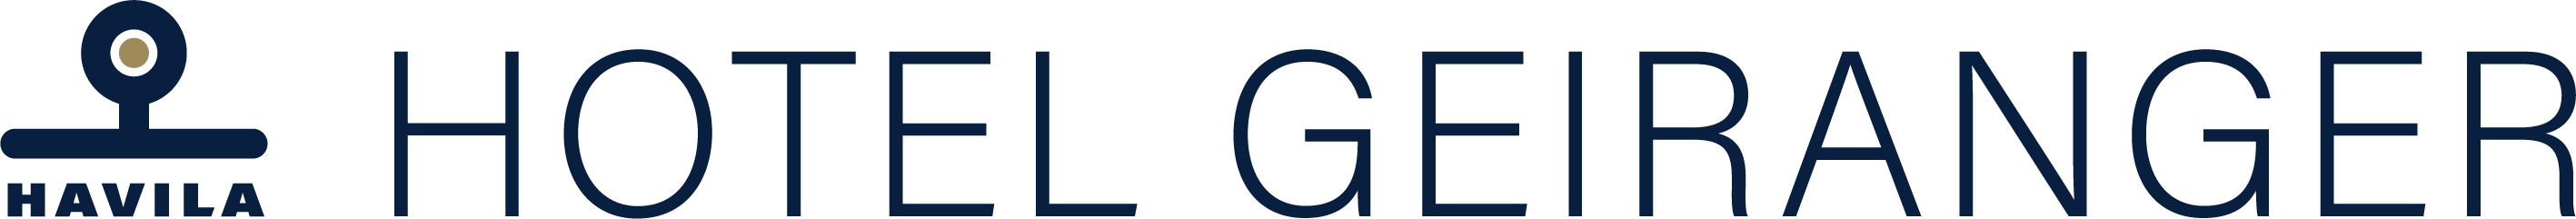 Havila Hotel Geiranger logo